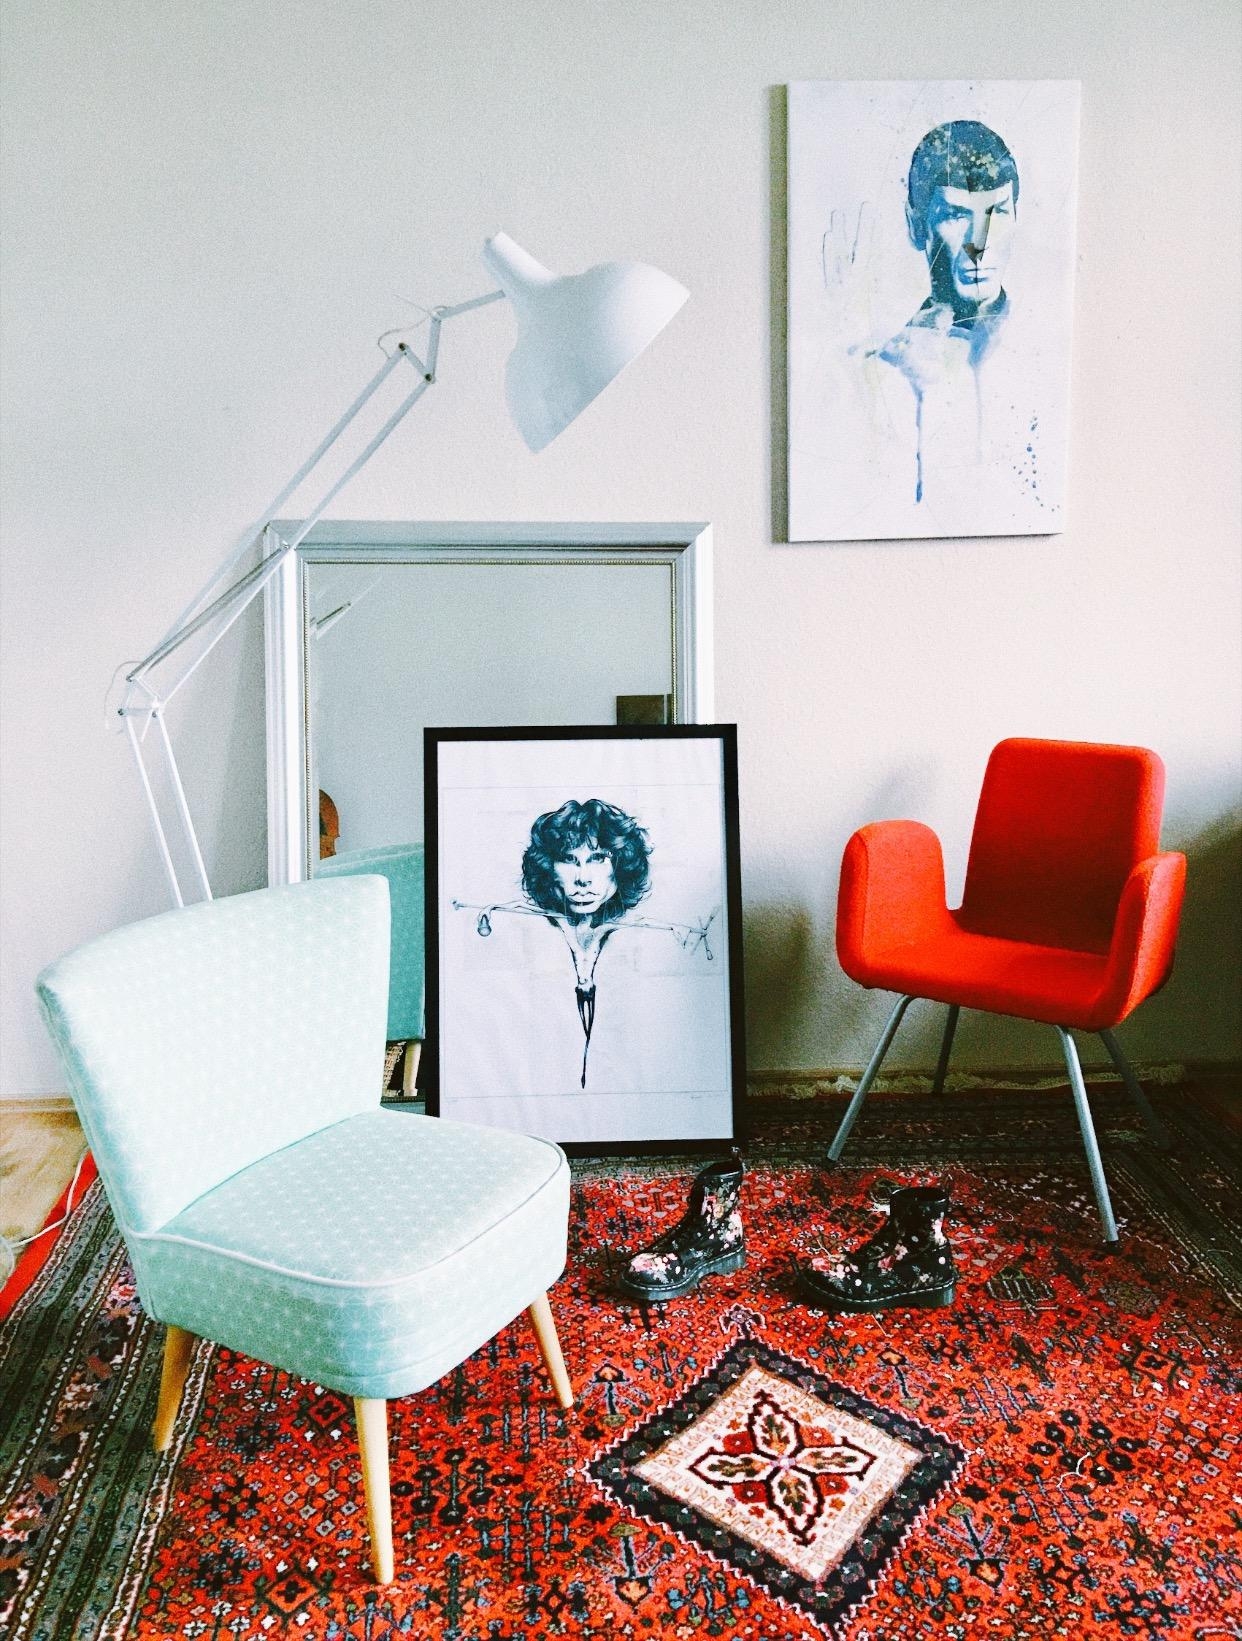 mein wohnzimmer 🌝 bevor the chaos #couchliebt#couchstyle#vintage#wohnzimmer#livingroom#rot#möbel#sessel#spiegel#teppich